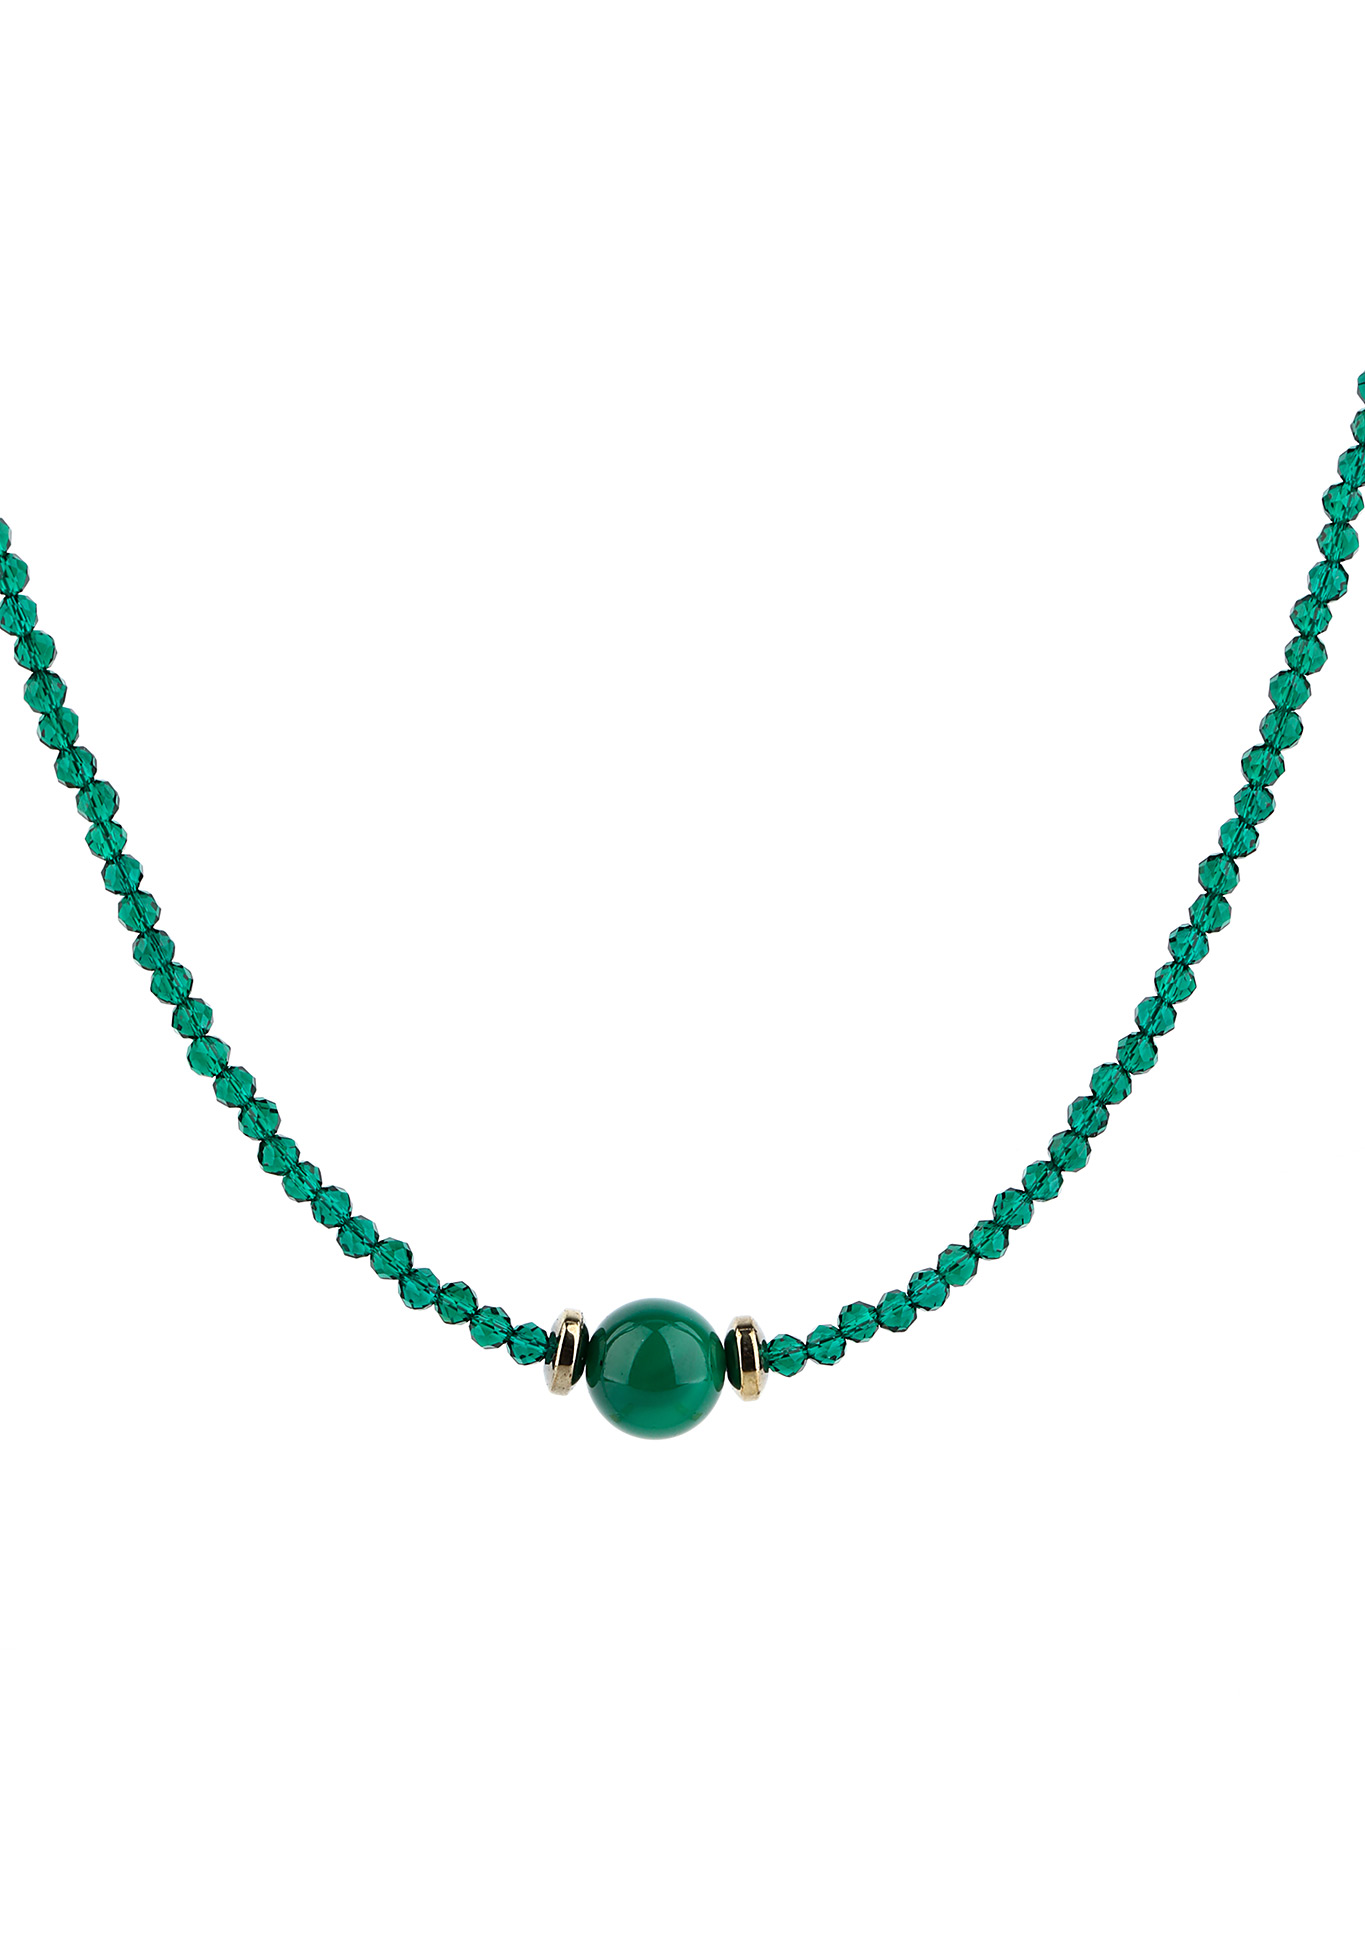 Комплект (бусы, браслет)  "Мэри" Каменная сказка, цвет зеленый принцесса - фото 3